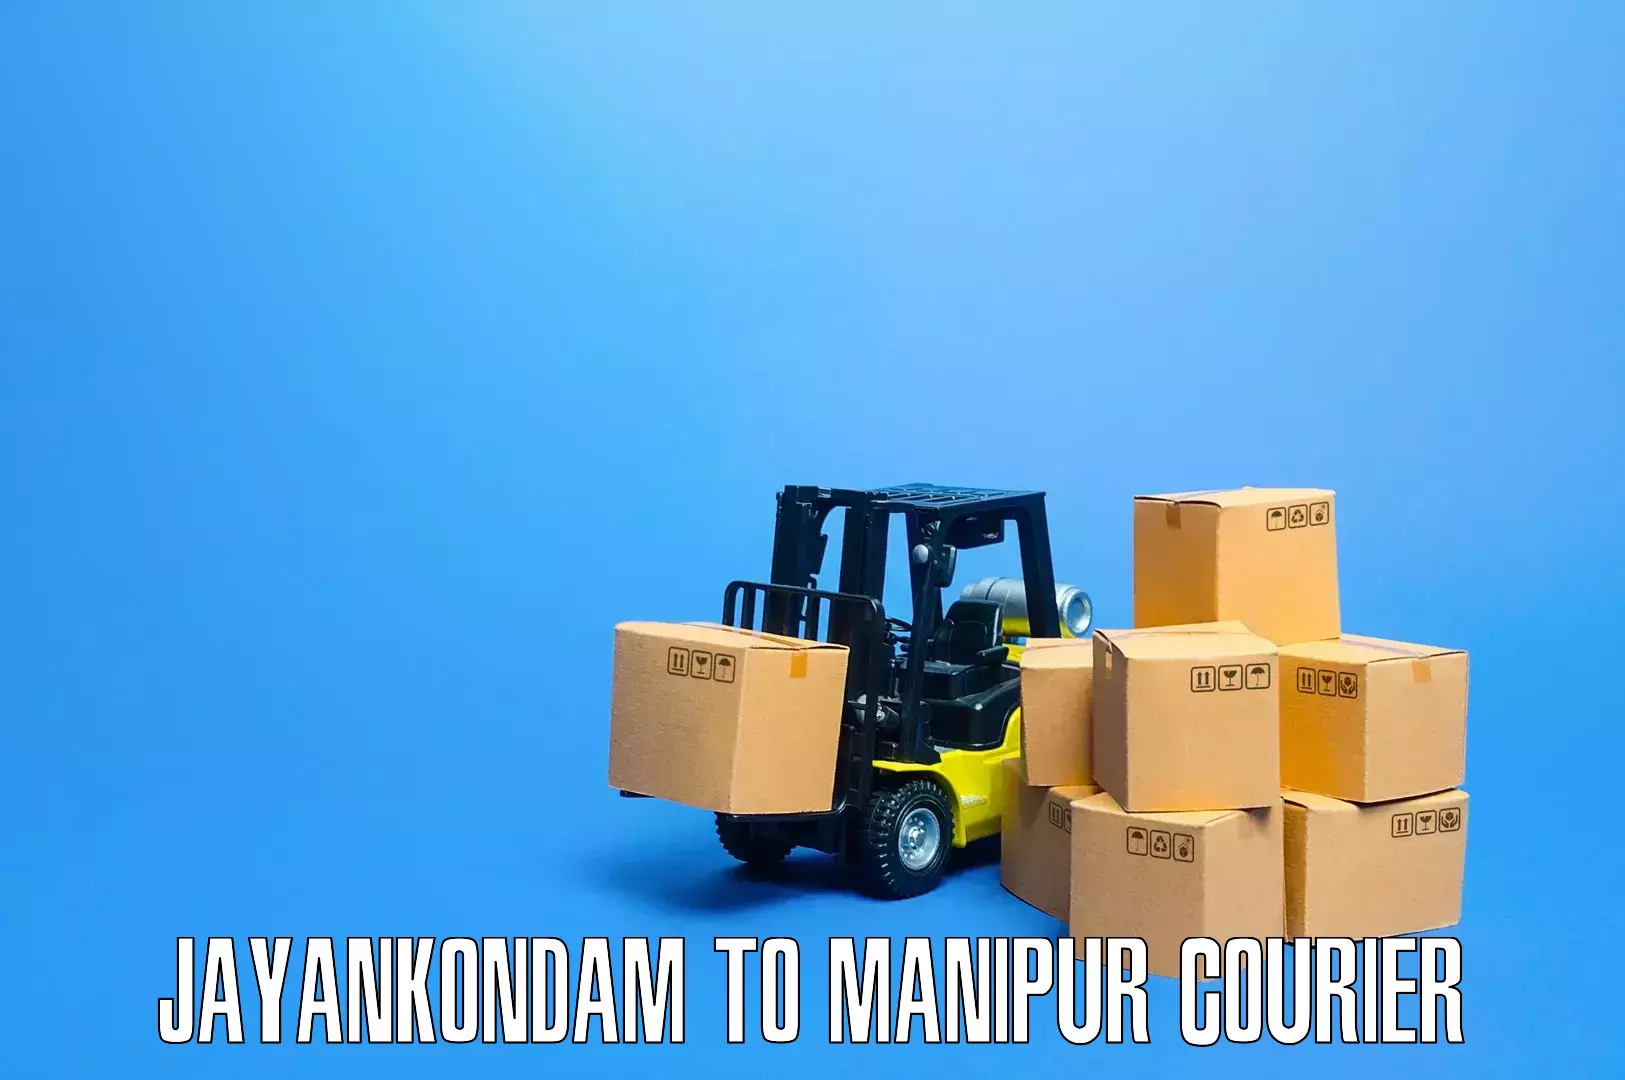 Efficient moving company Jayankondam to Ukhrul